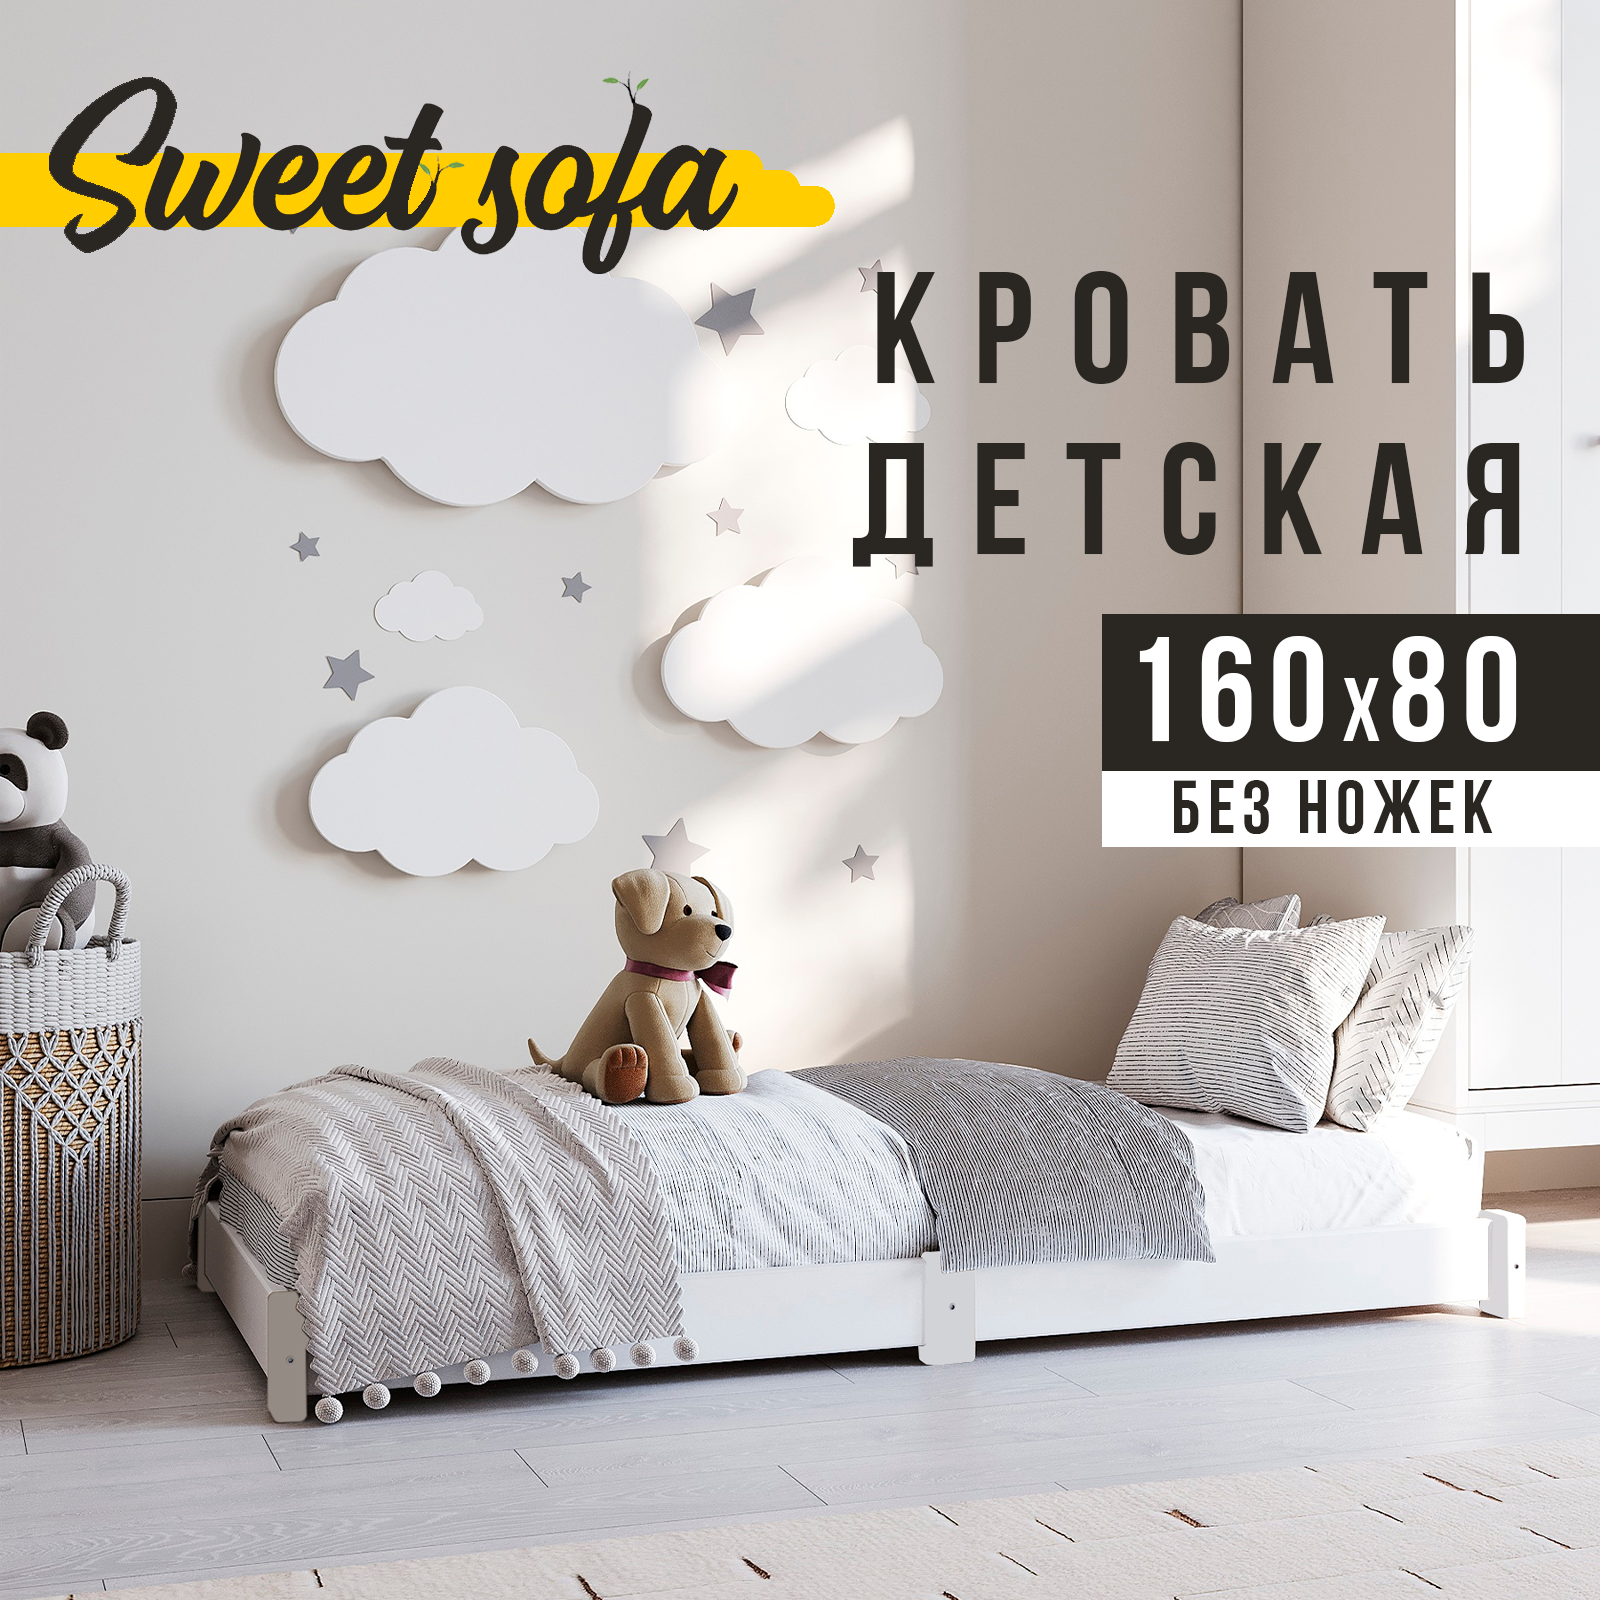 Кровать детская Sweet Sofa 160х80 низкая без ножек